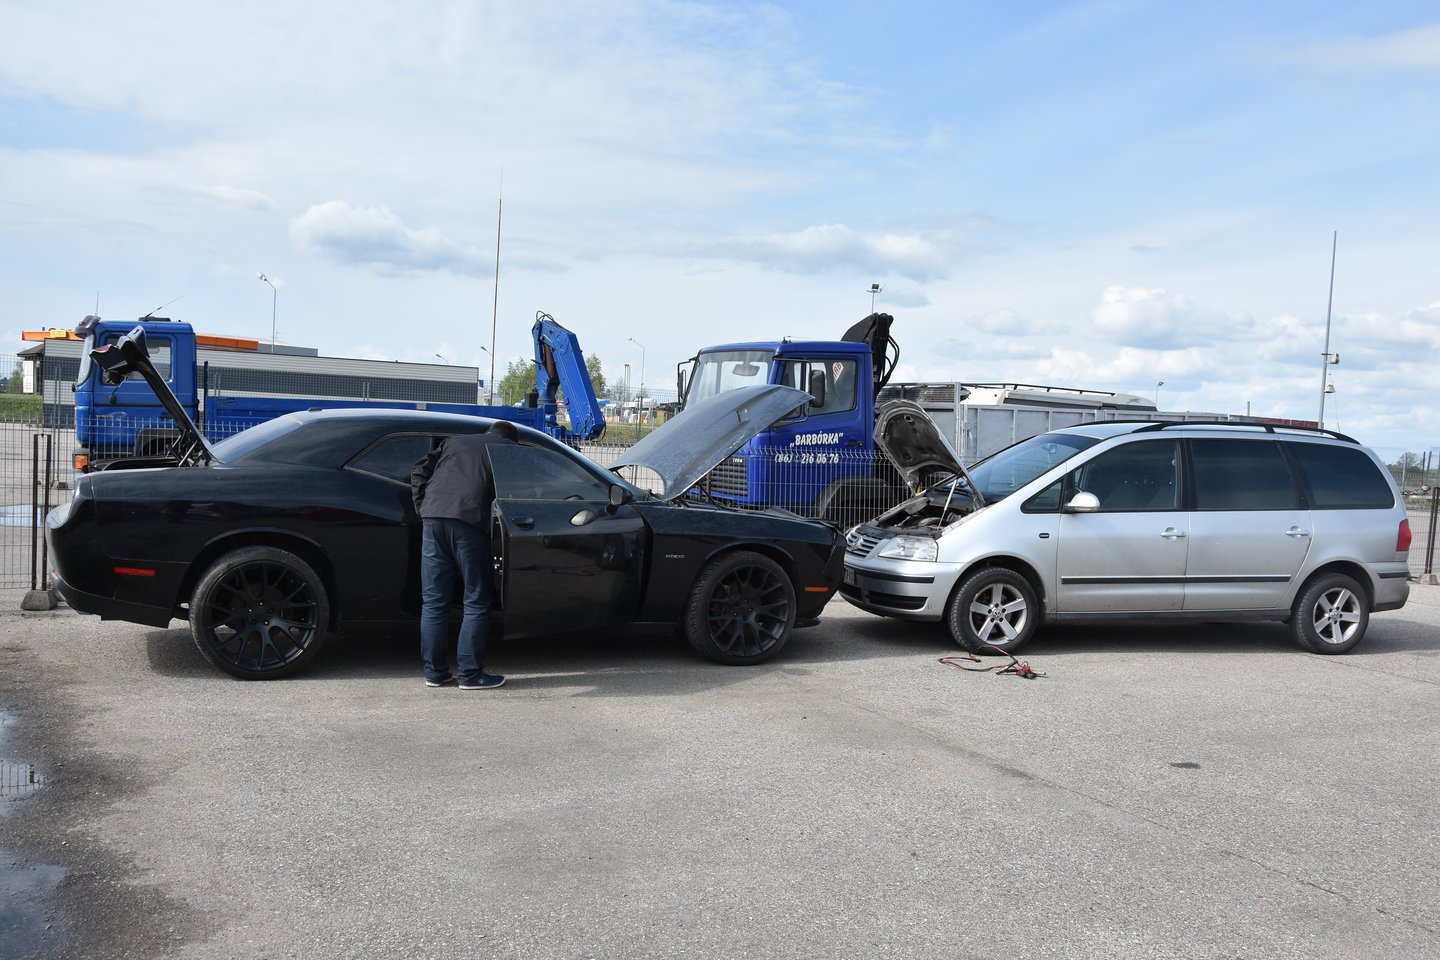 Marijampolės automobilių turgus šiemet merdėja – pardavėjų jame darbo dienomis daugiau nei pirkėjų.<br>A.Srėbalienės nuotr.